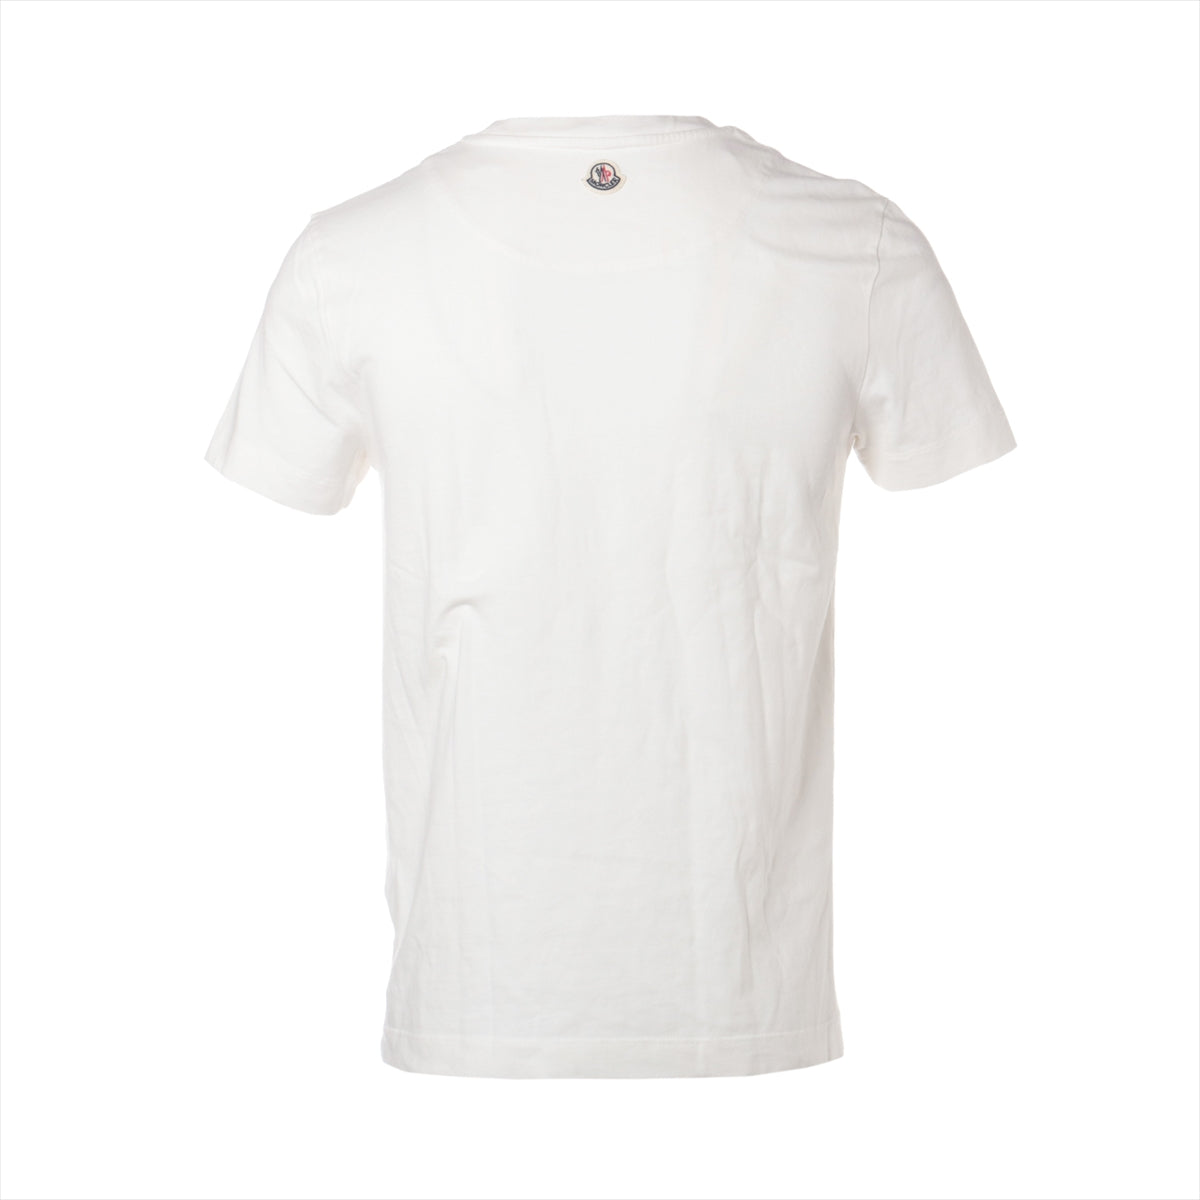 モンクレール 19年 コットン Tシャツ S メンズ ホワイト